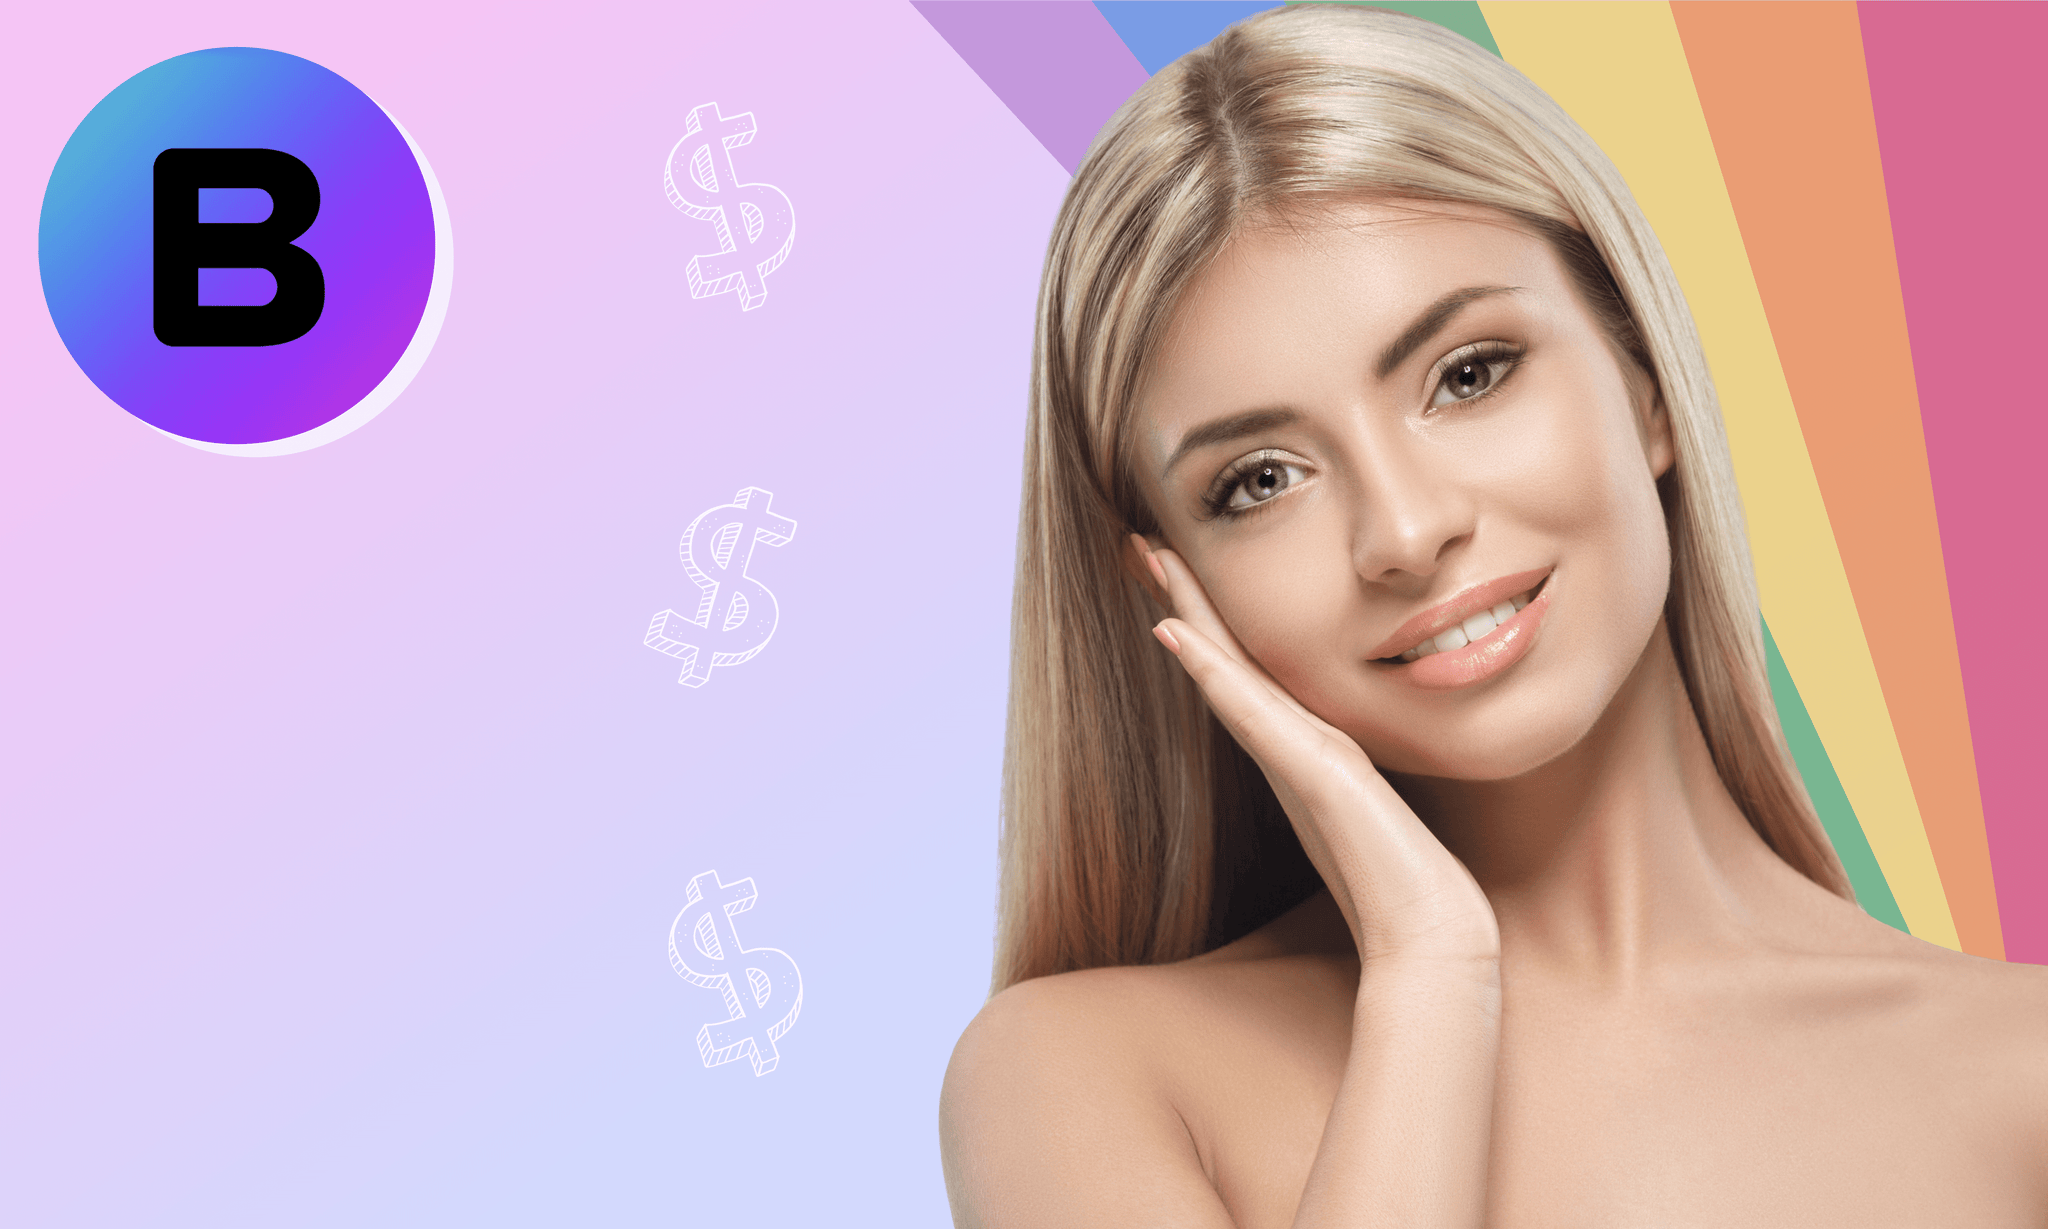 Sham-Rock Your Beauty Goals With BeautyFix